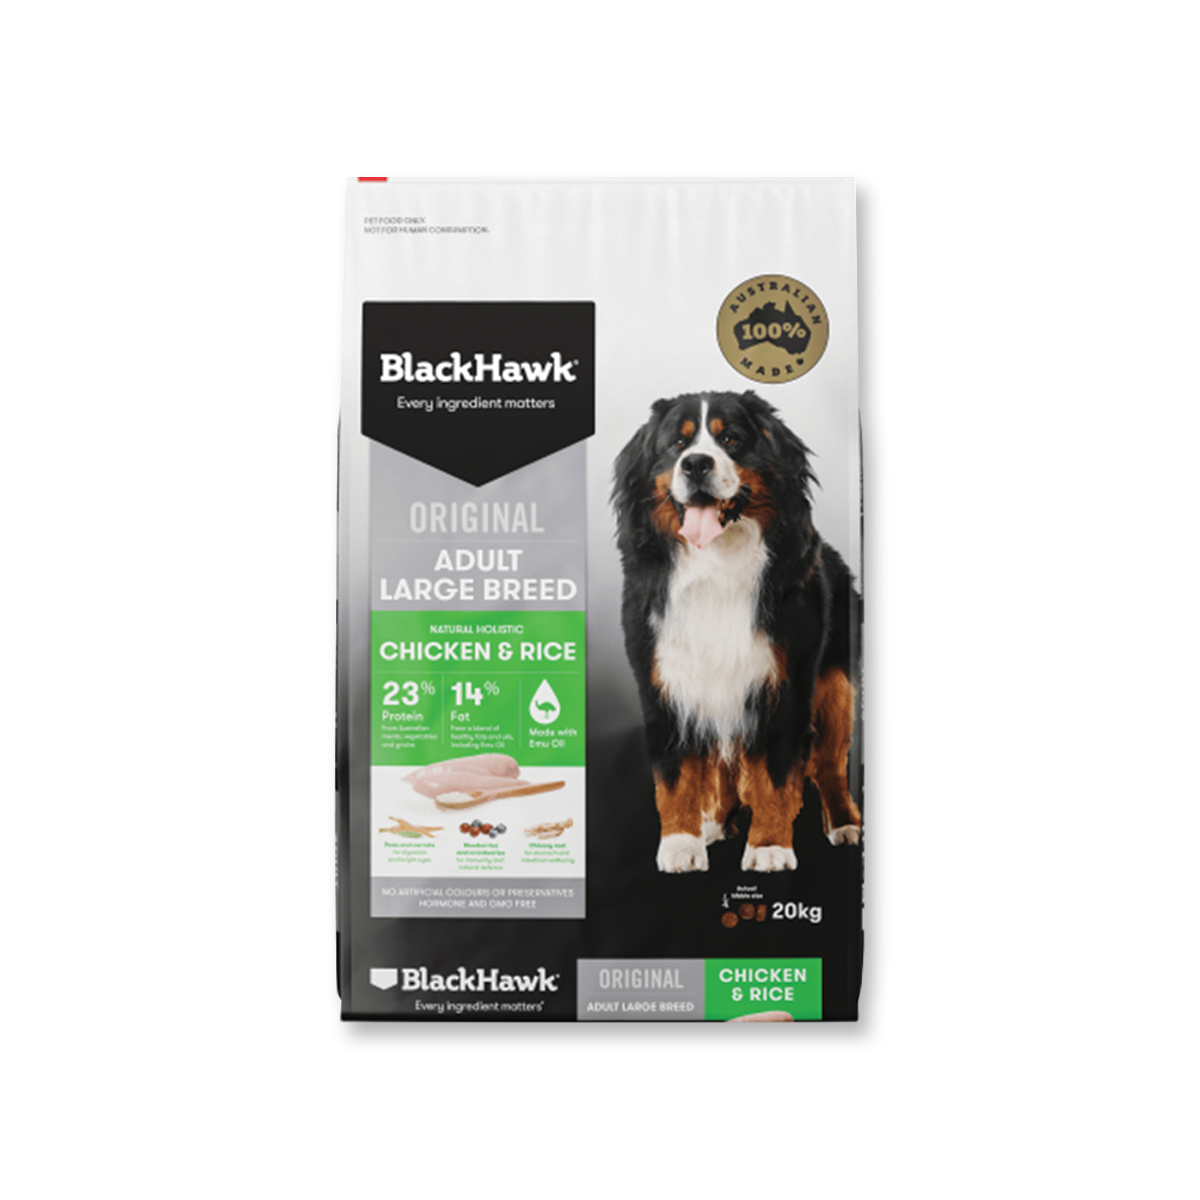 BlackHawk Original แบล็กฮอว์ก อาหารสุนัขพันธุ์ใหญ่สูตรเนื้อไก่และข้าว ขนาด 20 กิโลกรัม